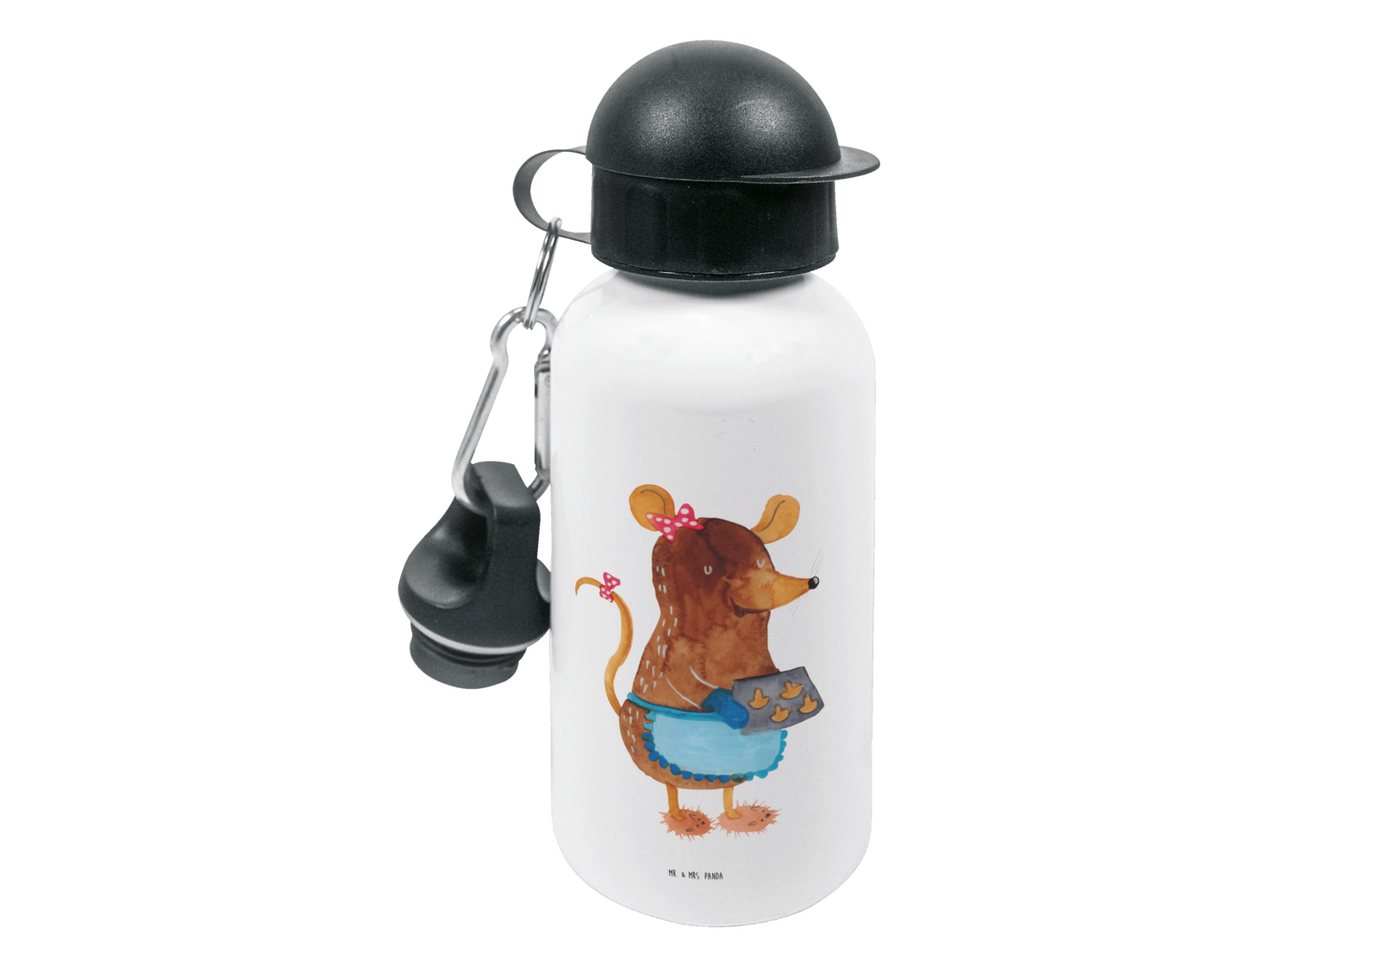 Mr. & Mrs. Panda Trinkflasche Maus Kekse - Weiß - Geschenk, Mädchen, Plätzchen, Chaosqueen, Winter, Fröhliche Motive von Mr. & Mrs. Panda